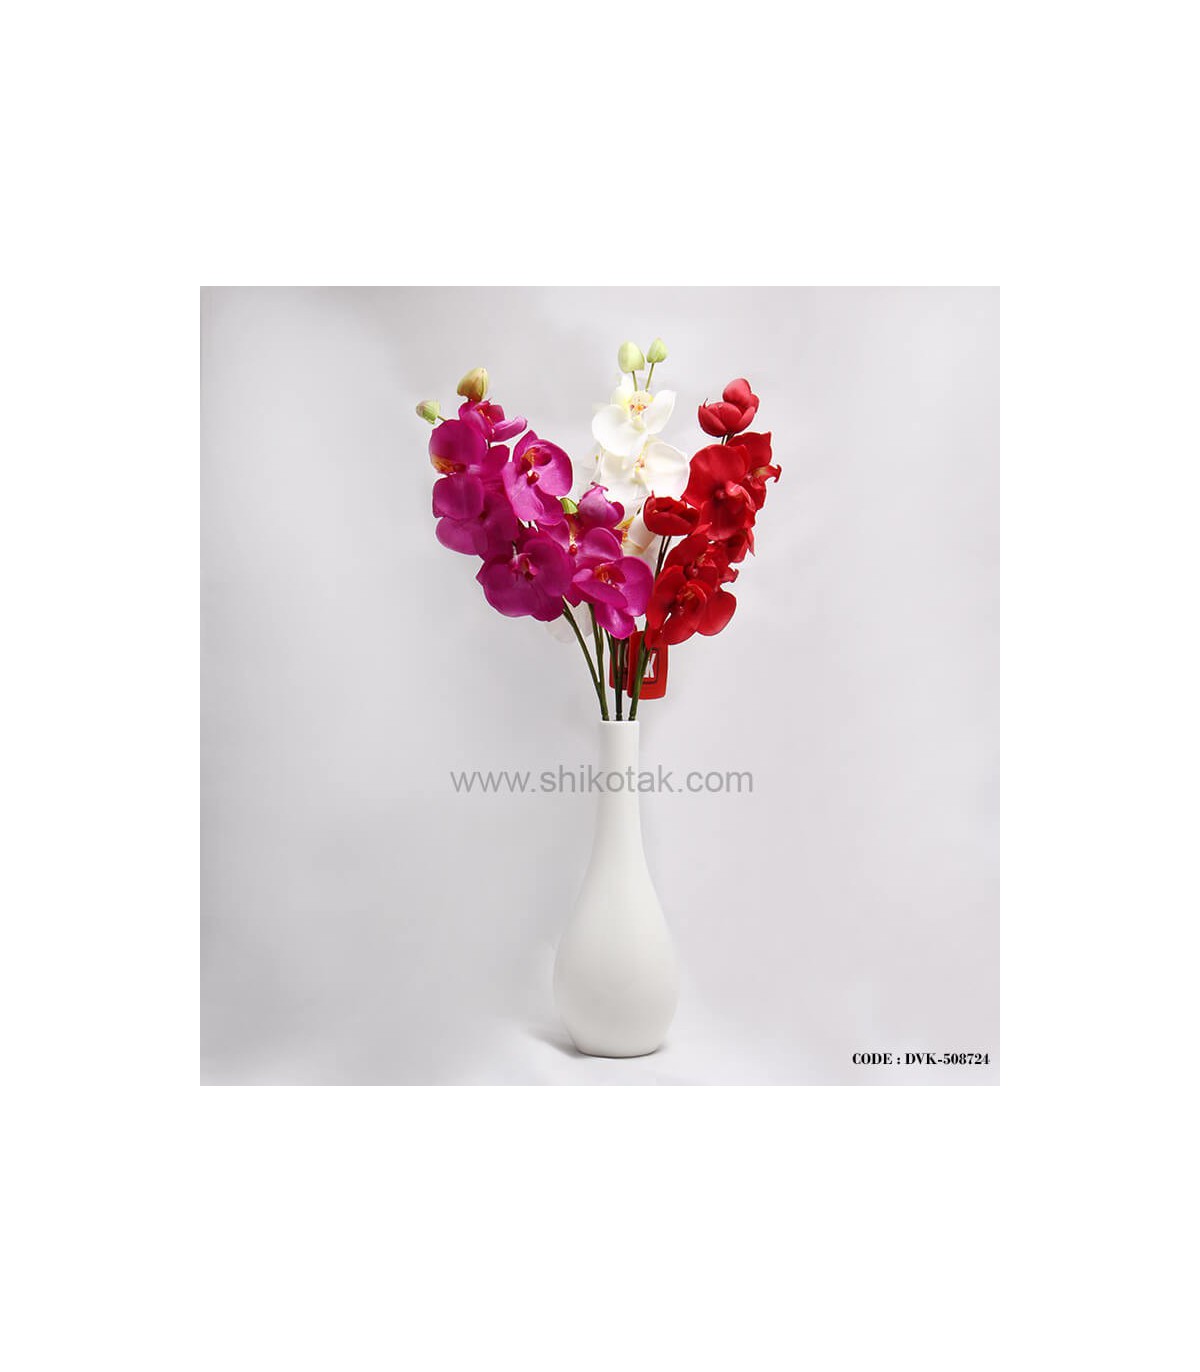 گلدان سفید سرامیکی مدل کوزه ای